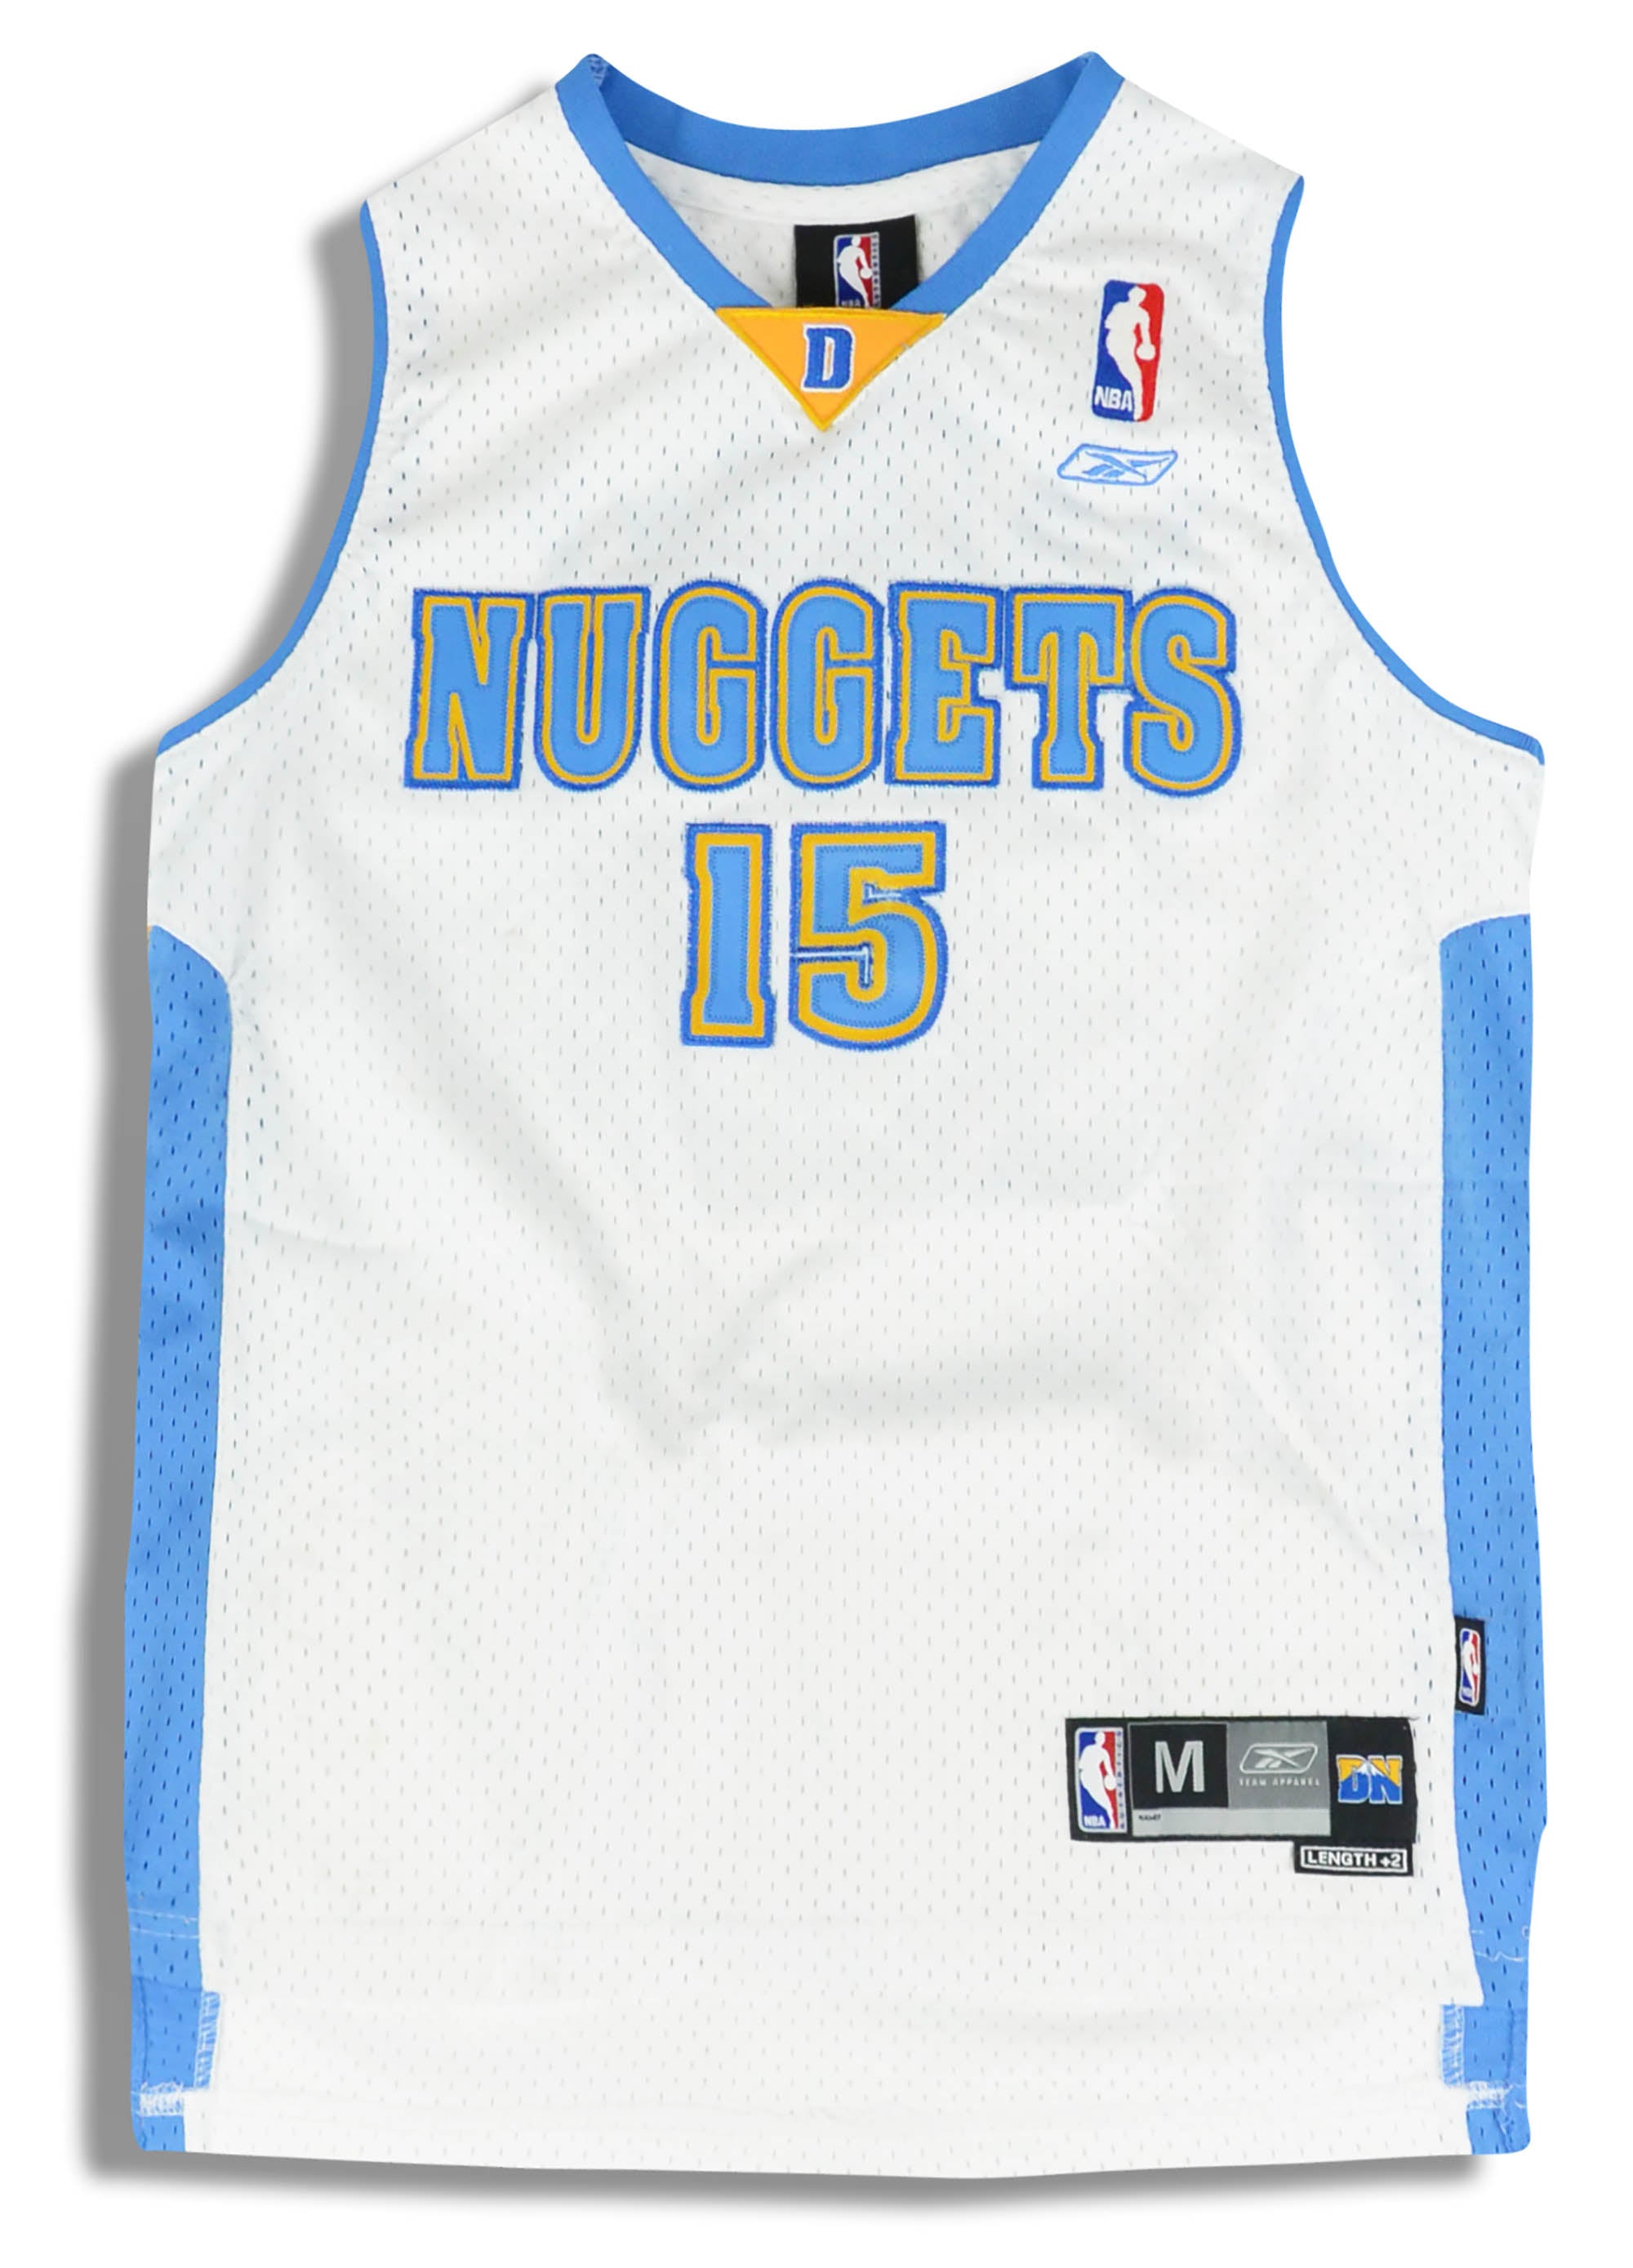 Vintage Denver Nuggets Carmelo Anthony 15 Jersey Reebok Size 